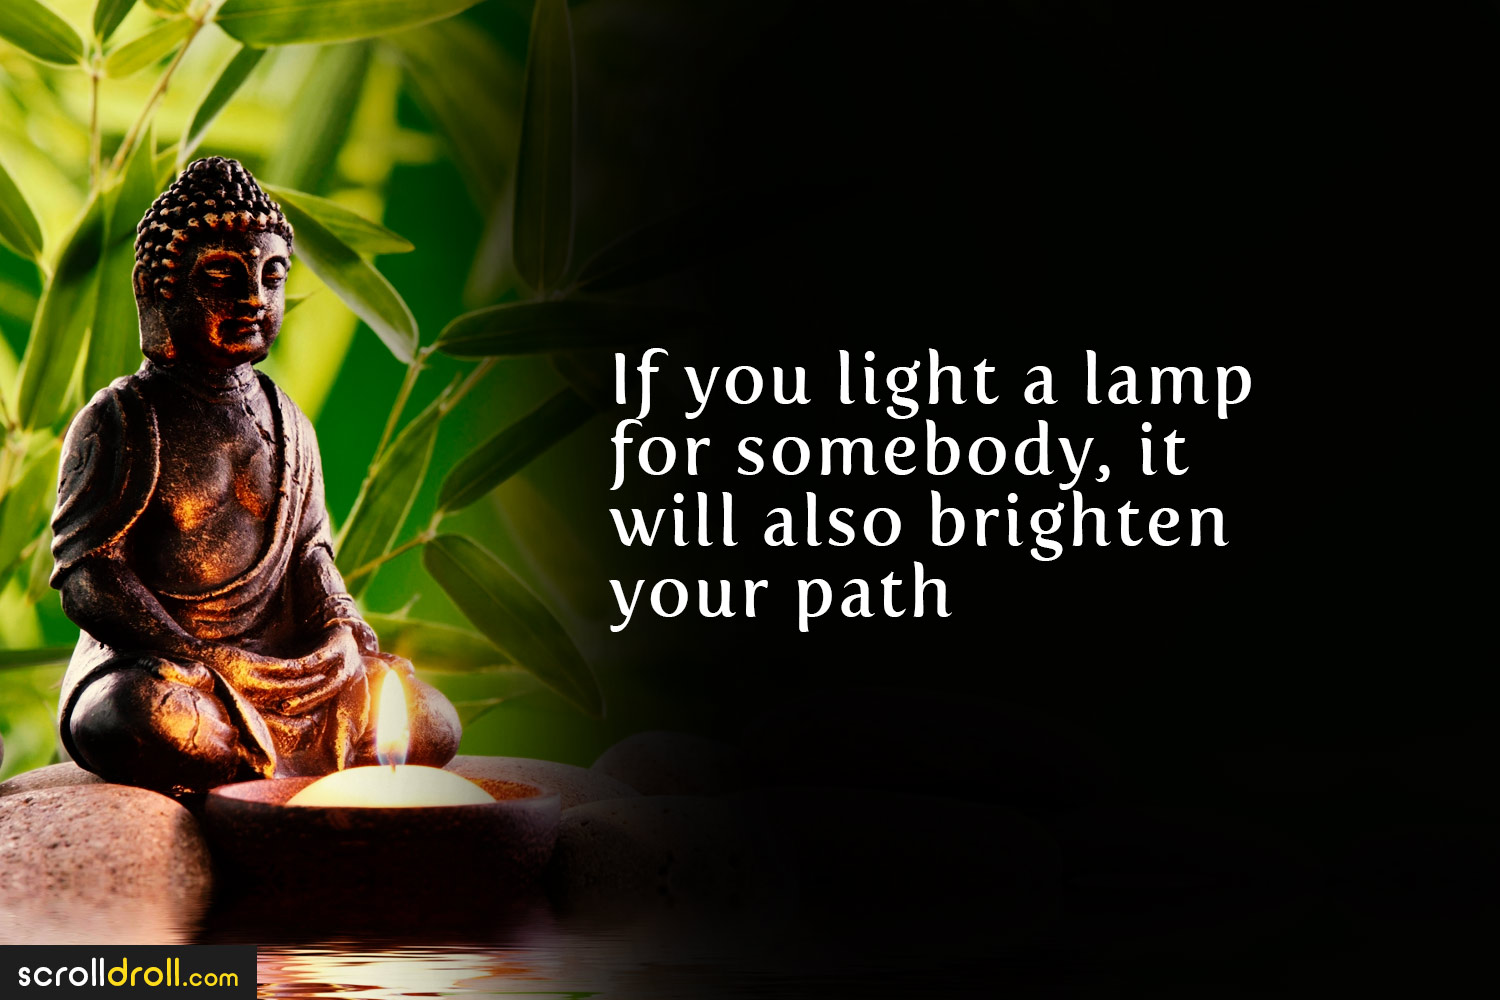 gautam buddha quotes on life